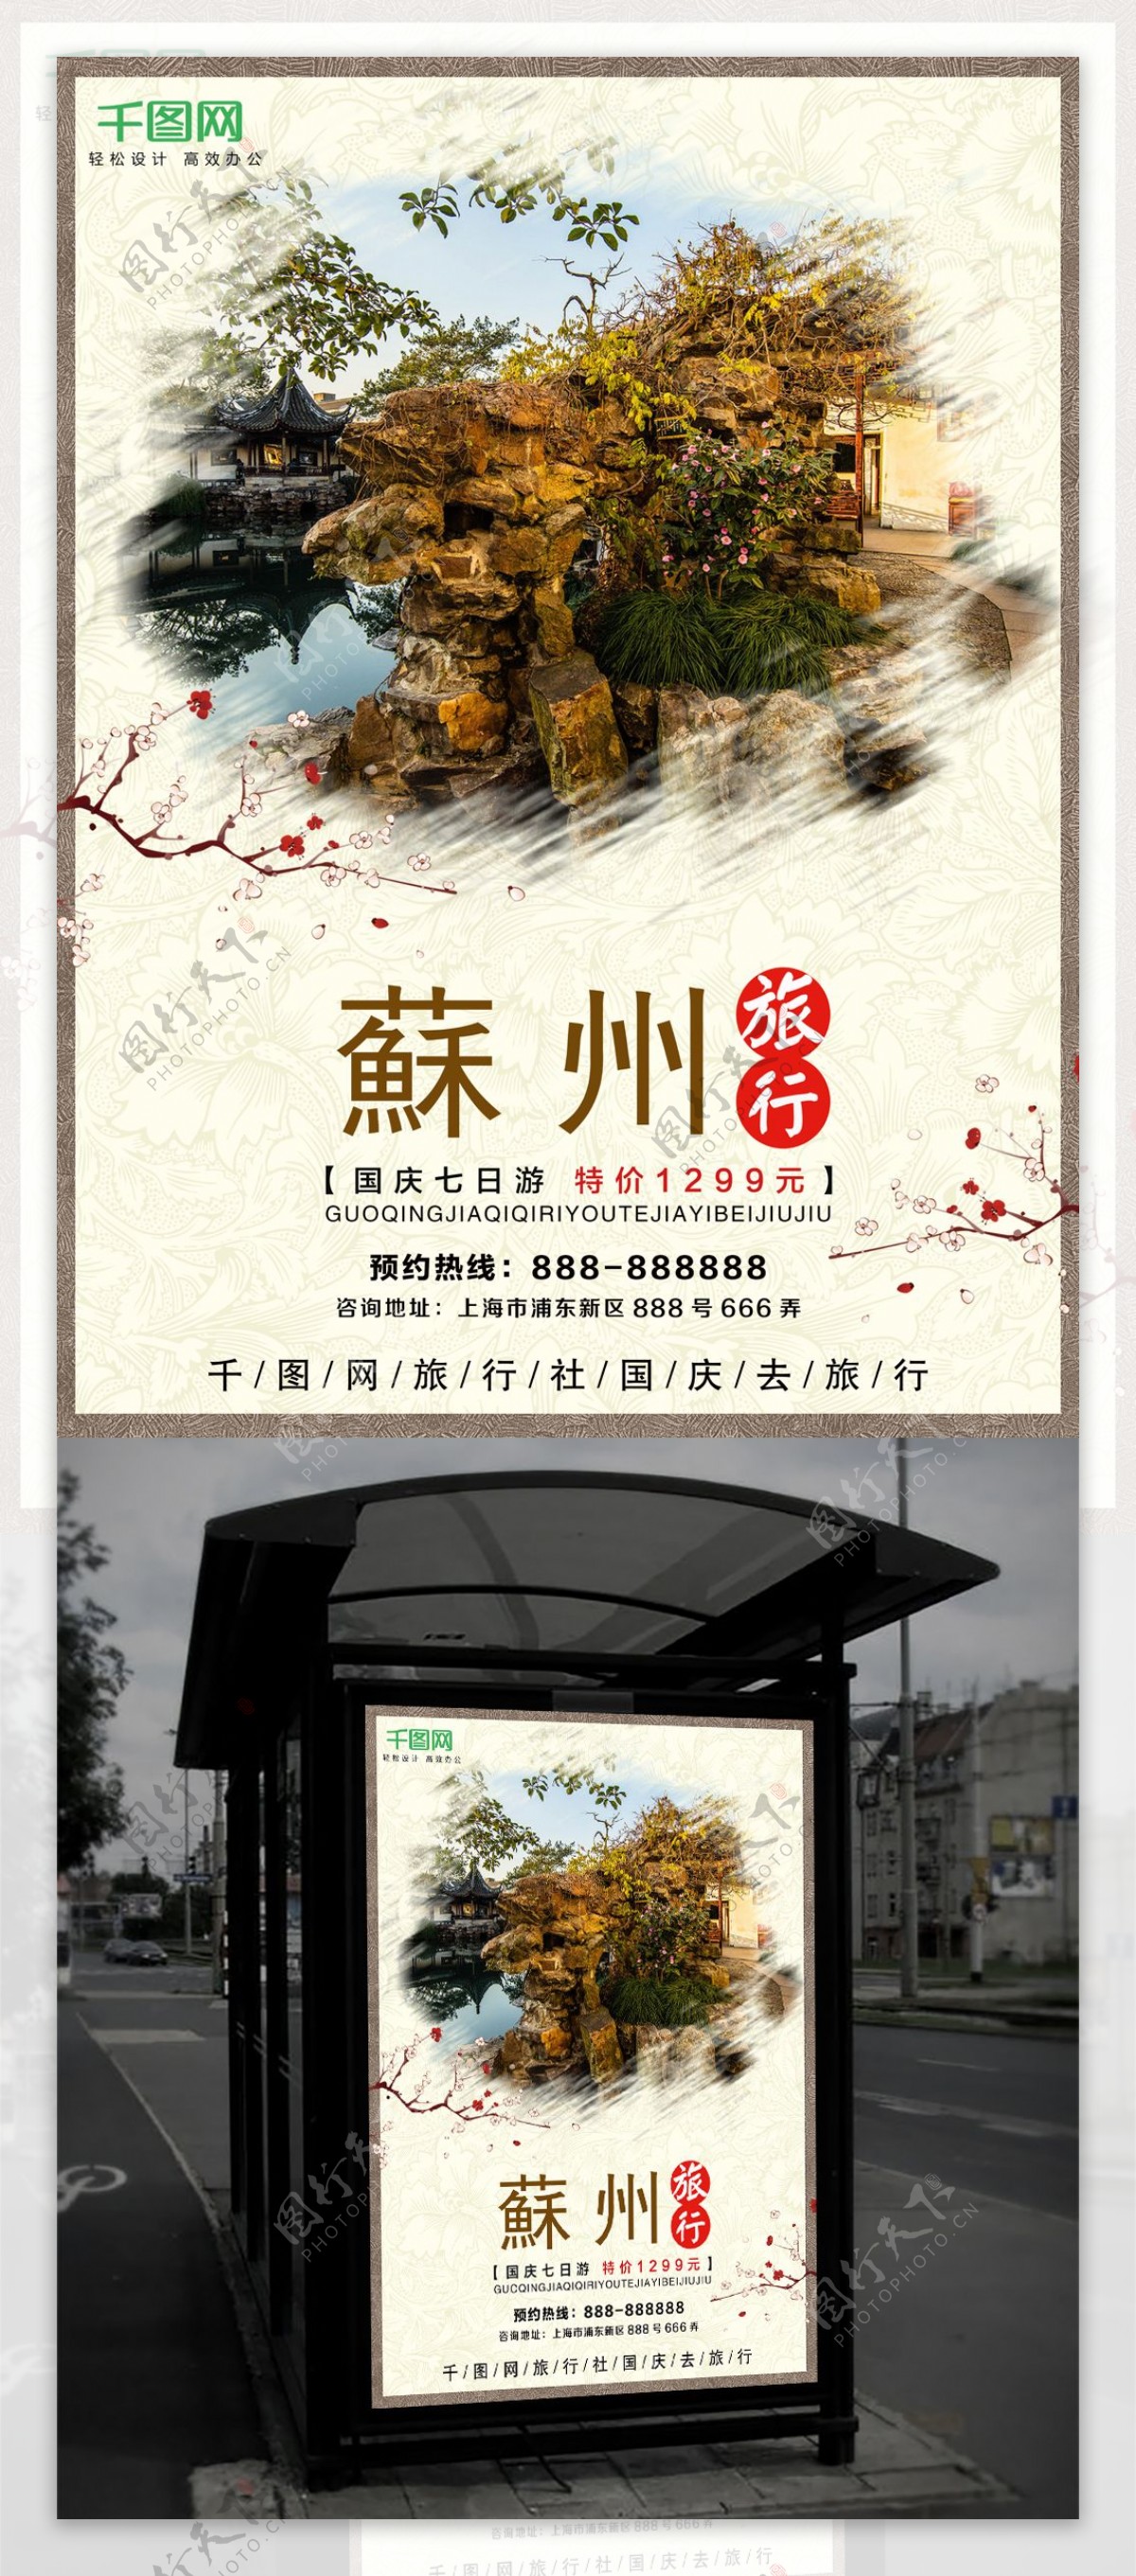 醉美中国风苏州旅游旅行海报设计